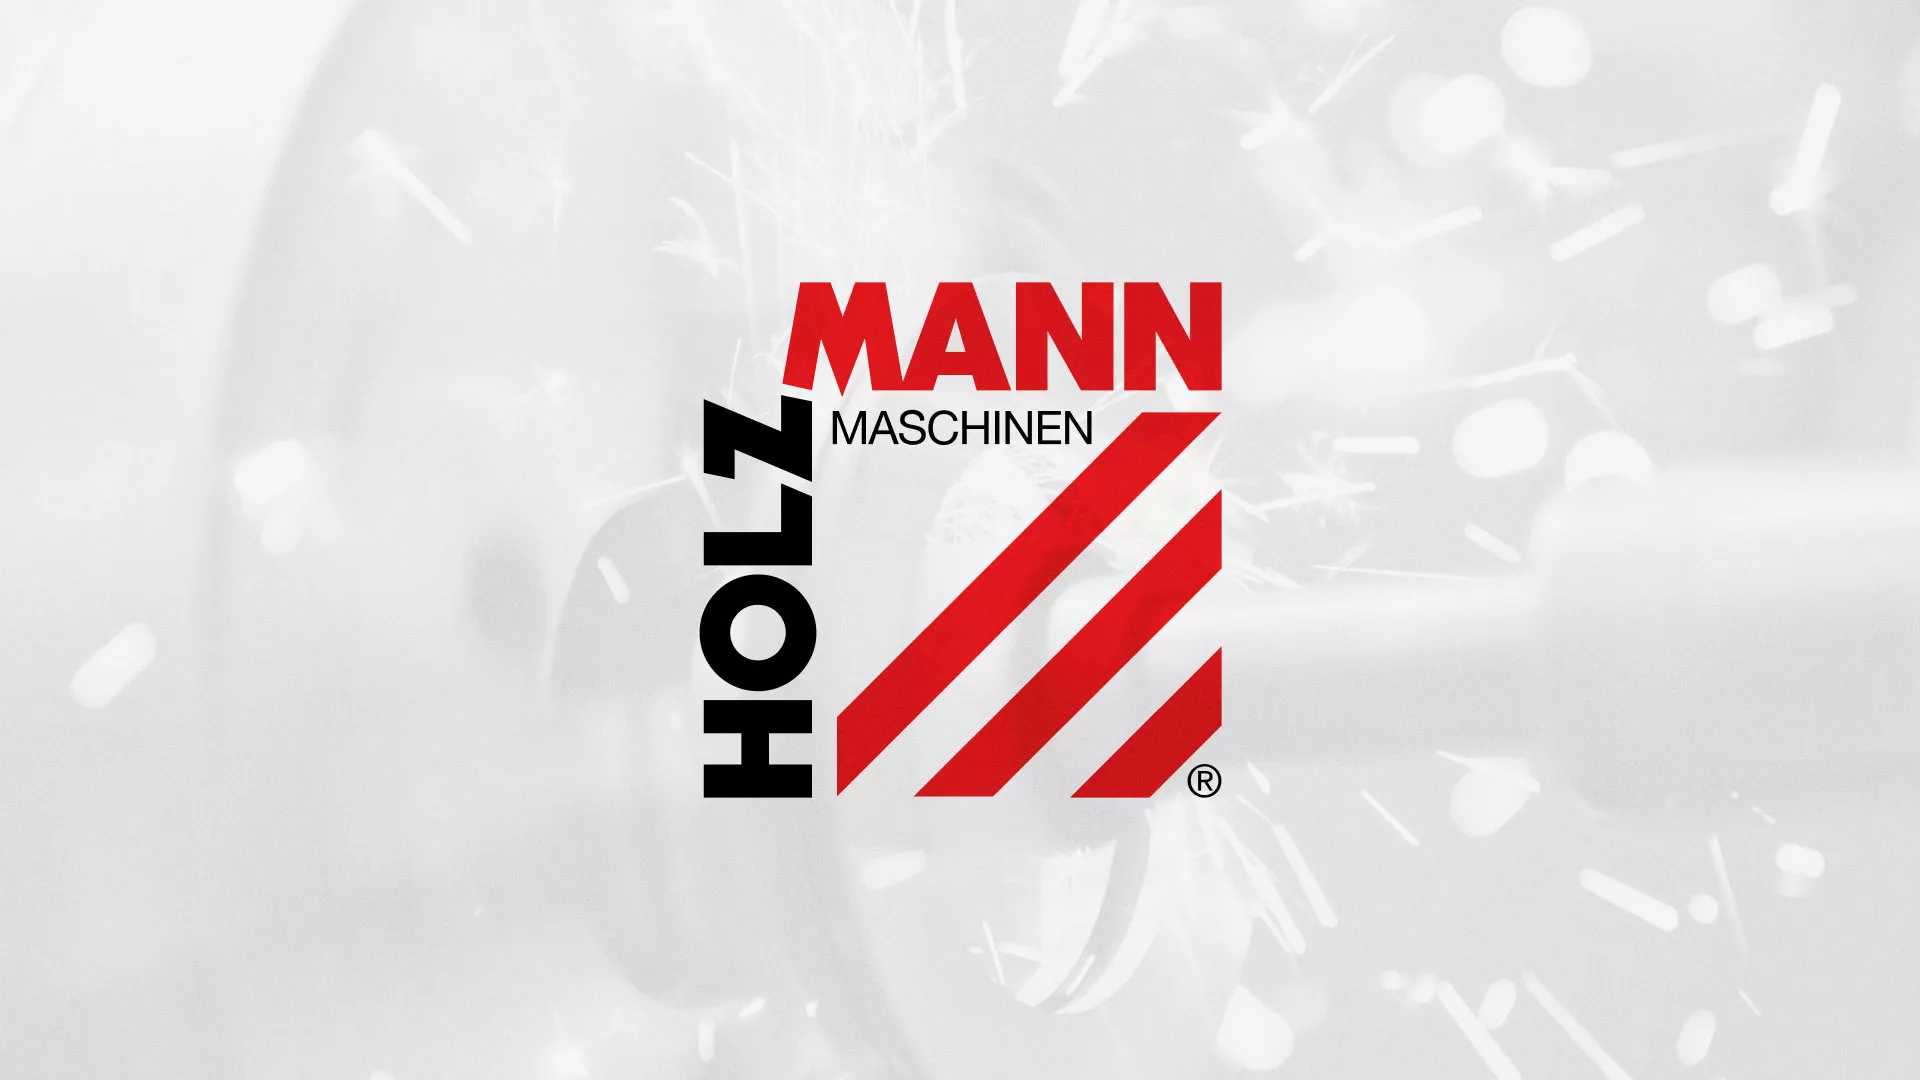 Создание сайта компании «HOLZMANN Maschinen GmbH» в Сольвычегодске